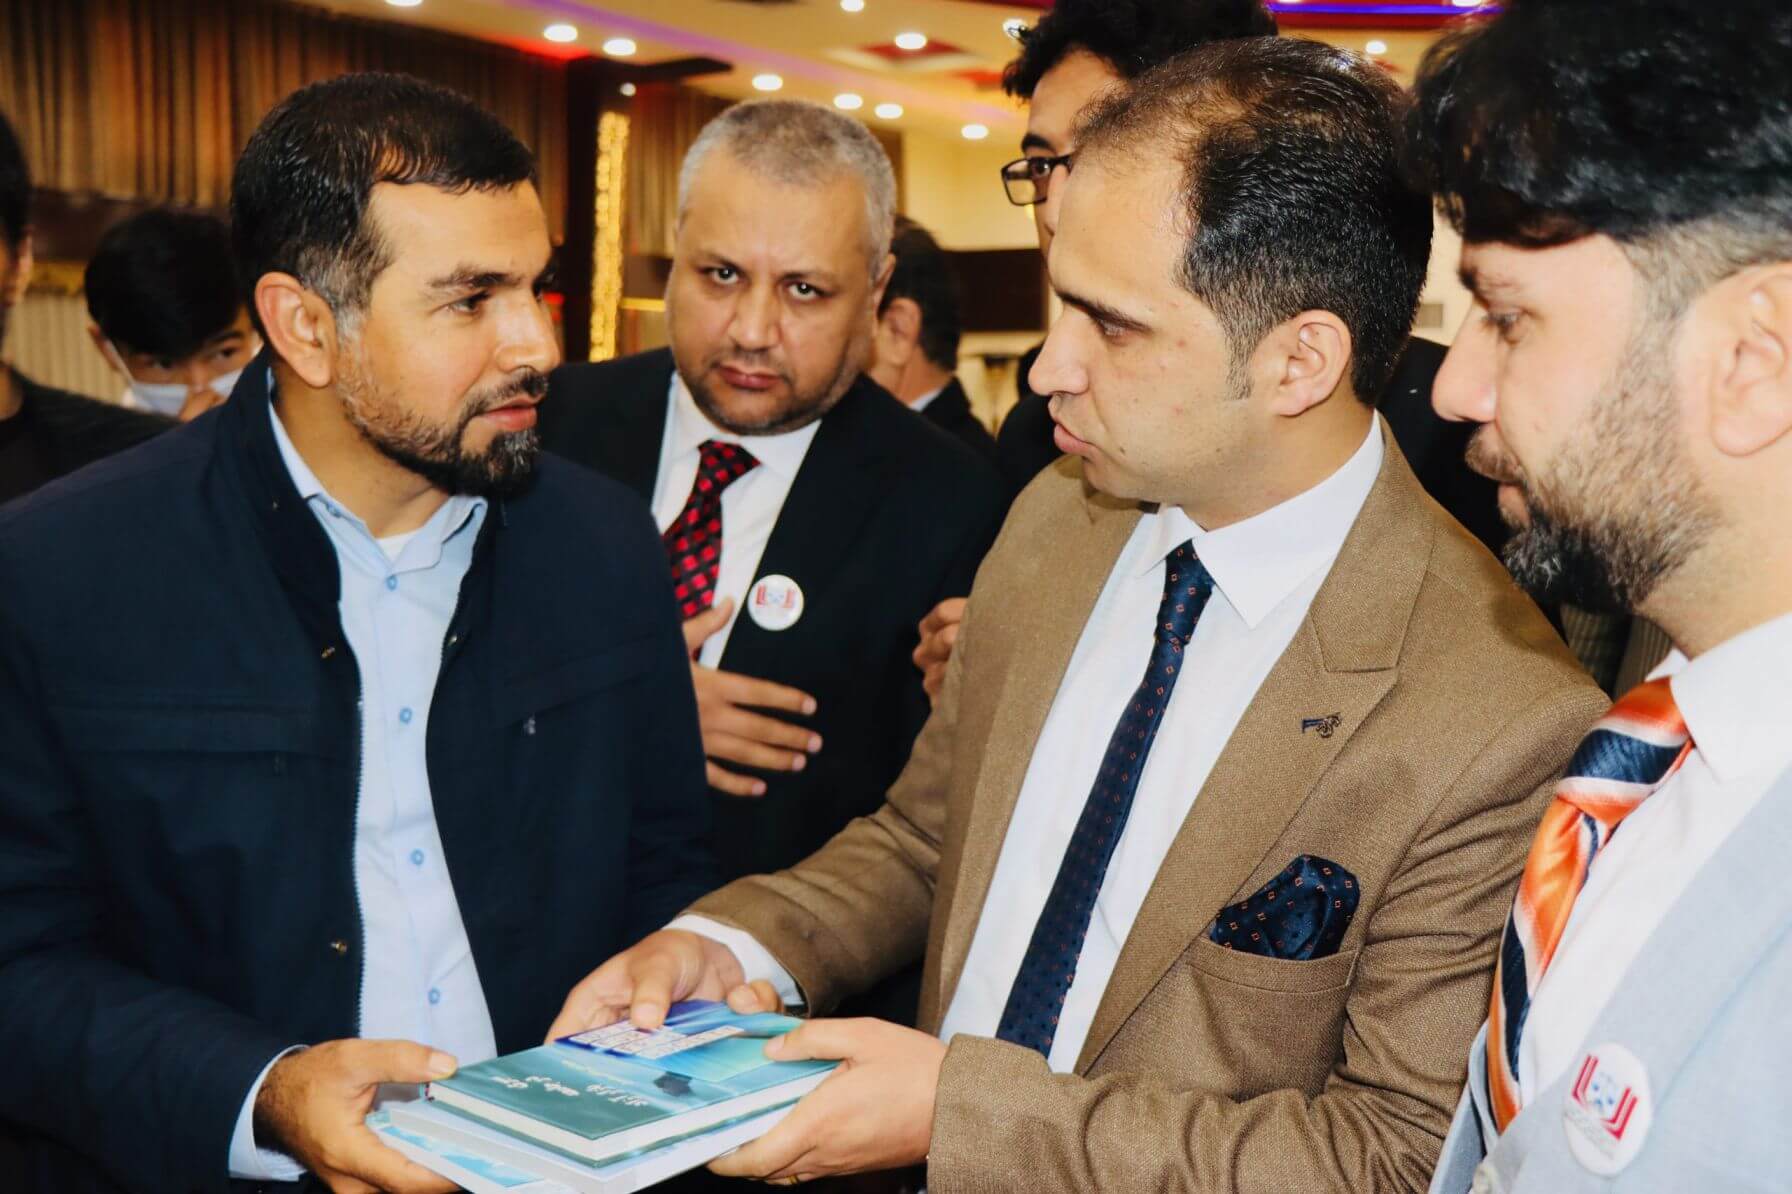 محترم محمد خالد رامزی رئیس اجرائیه موسسه مطالعات اقتصادی و حقوقی افغانستان در هنگام اهدای سی دی و کتب نشر و چاپ شده از طریق این موسسه برای محترم والی صاحب هرات.